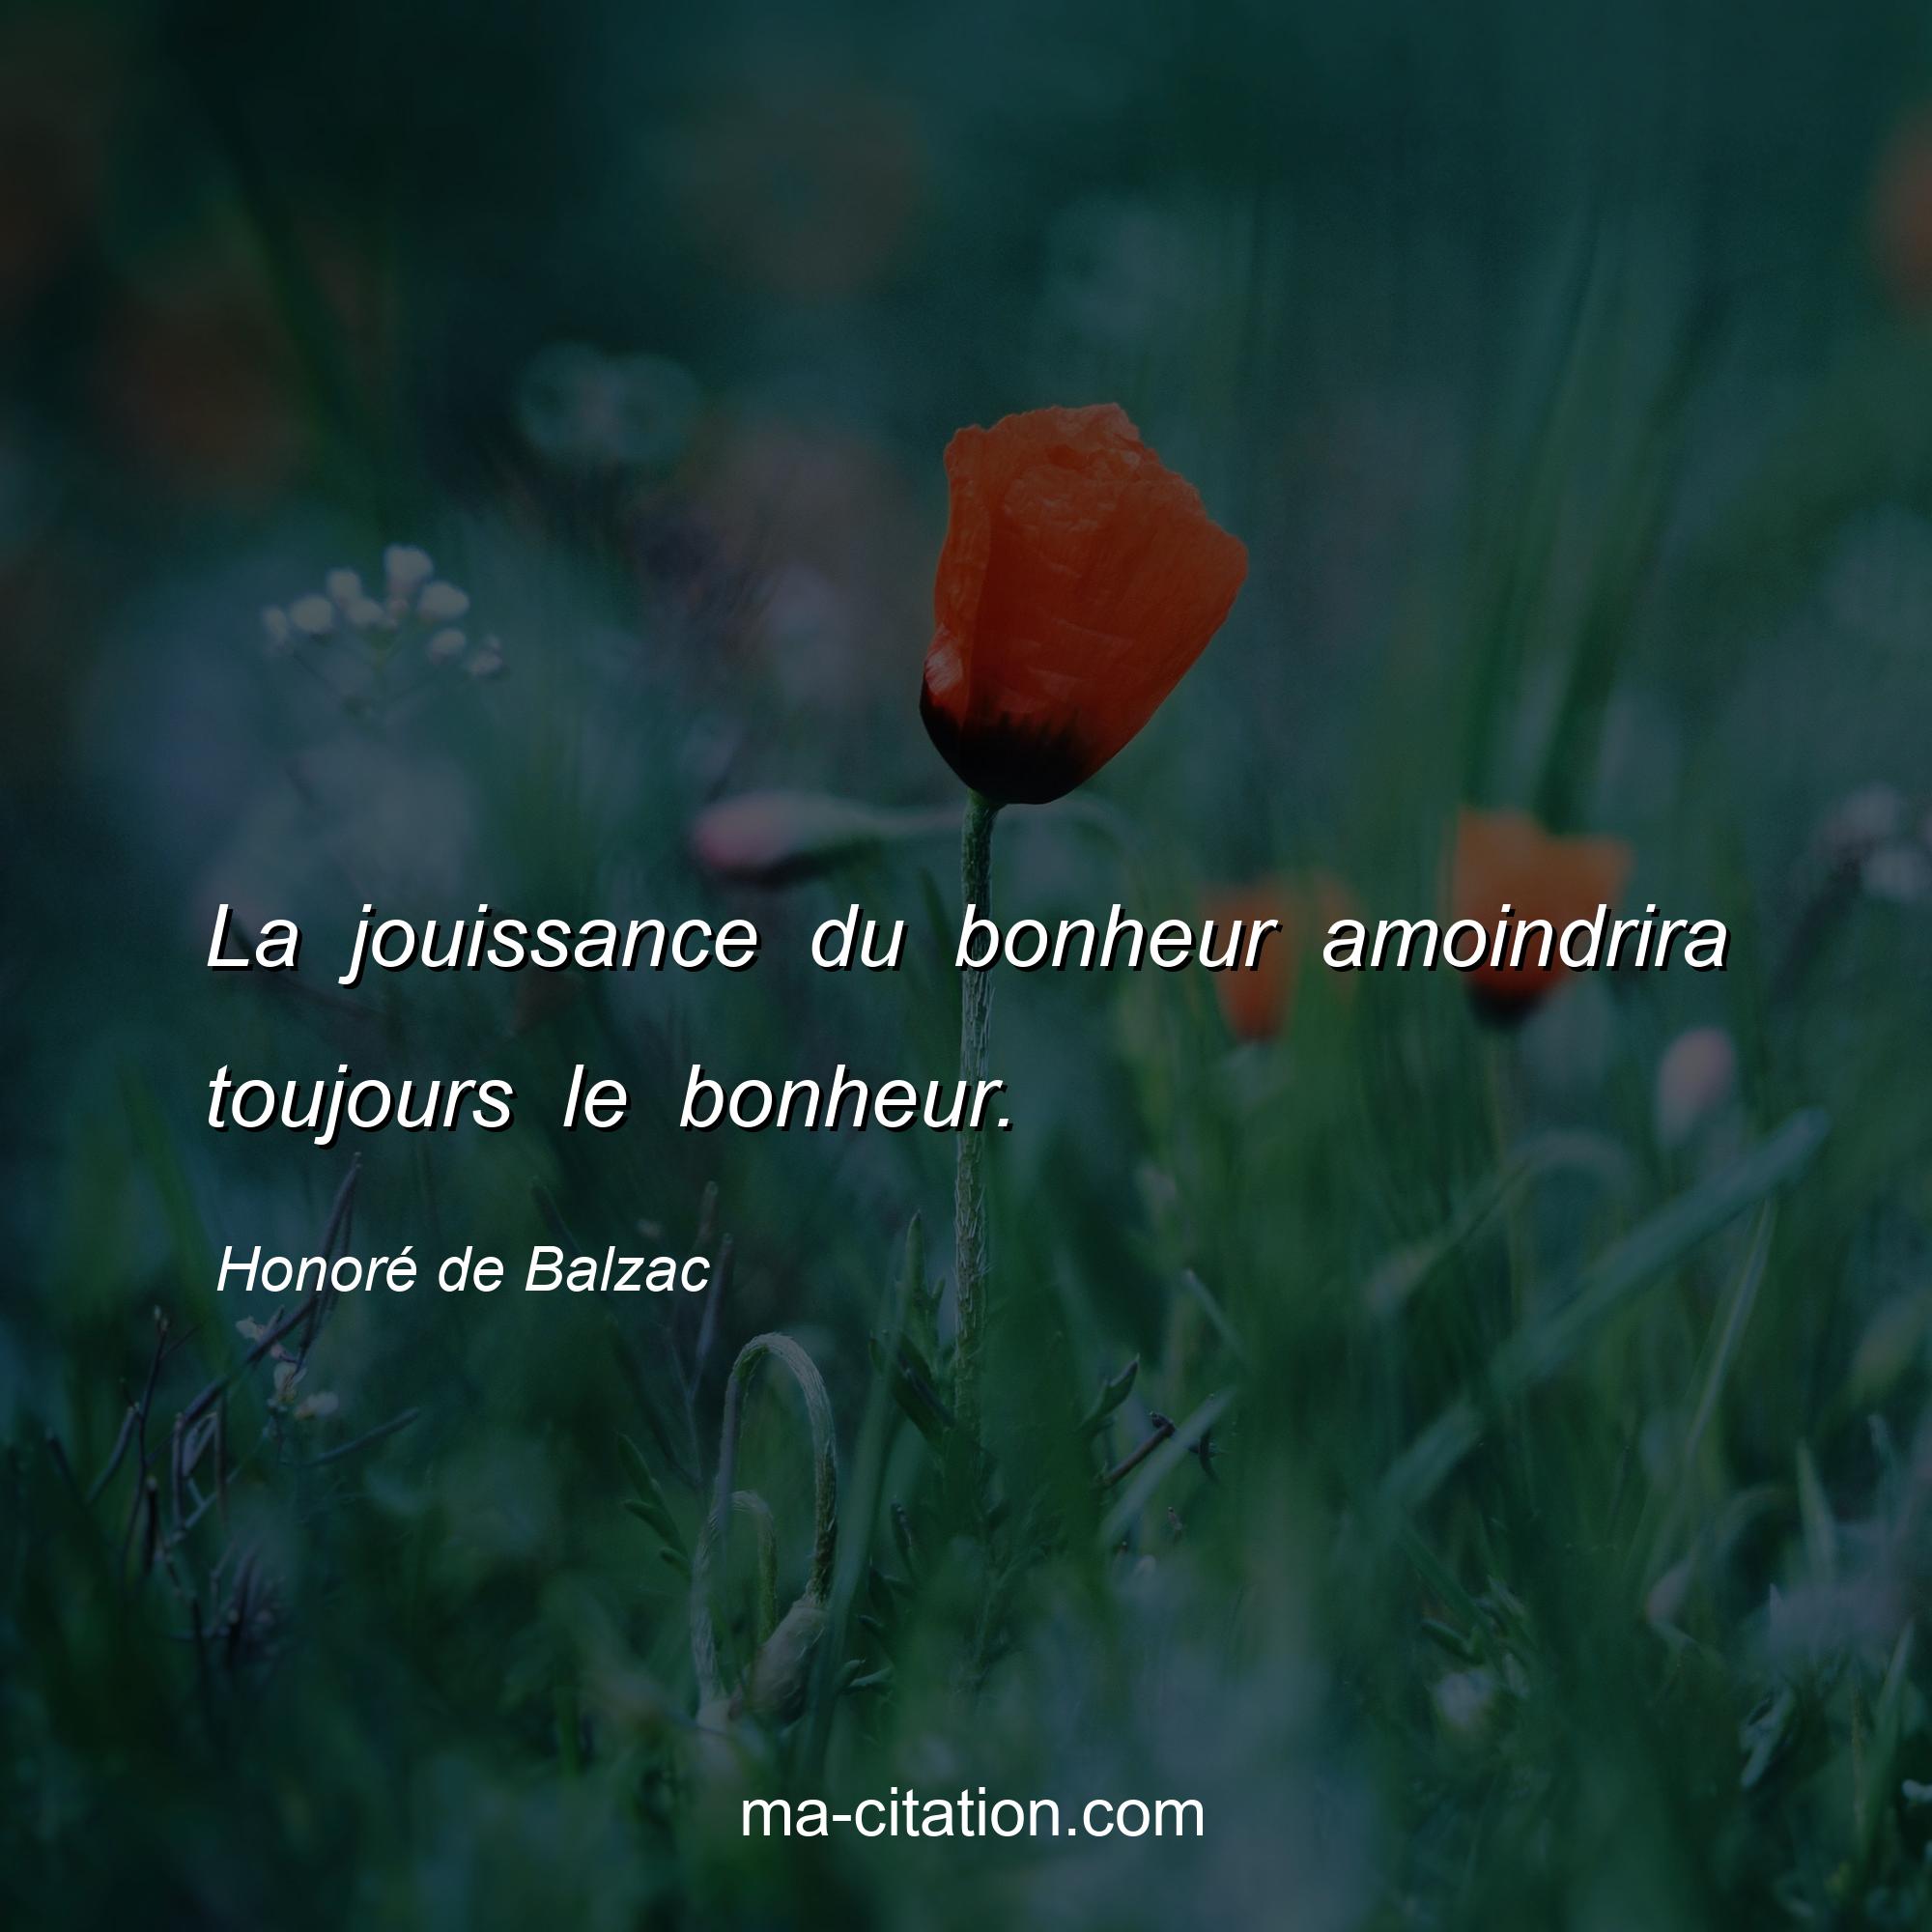 Honoré de Balzac : La jouissance du bonheur amoindrira toujours le bonheur.